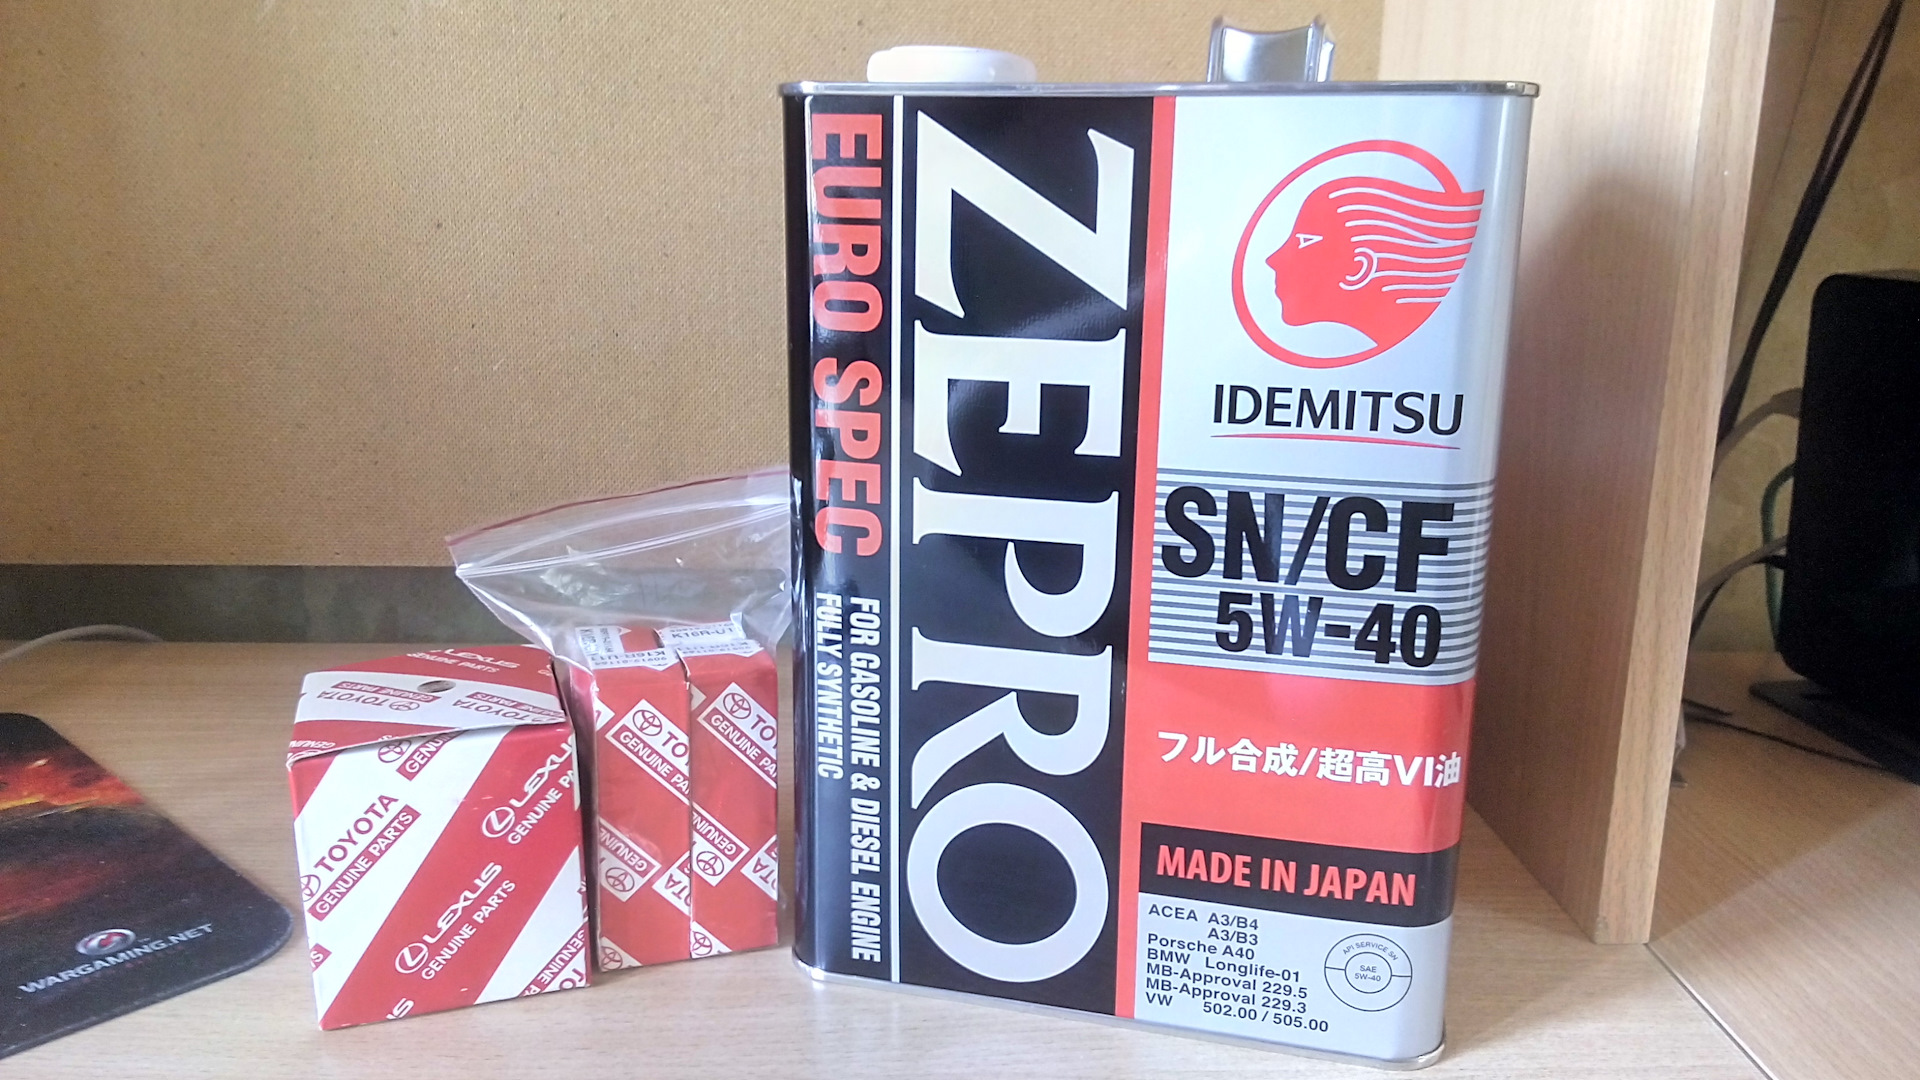 Zepro масло 5w 30. Идемитсу зепро 5в40. Idemitsu Zepro 5w30. Idemitsu Zepro Touring 5w-30. Zepro Racing 5w-30.